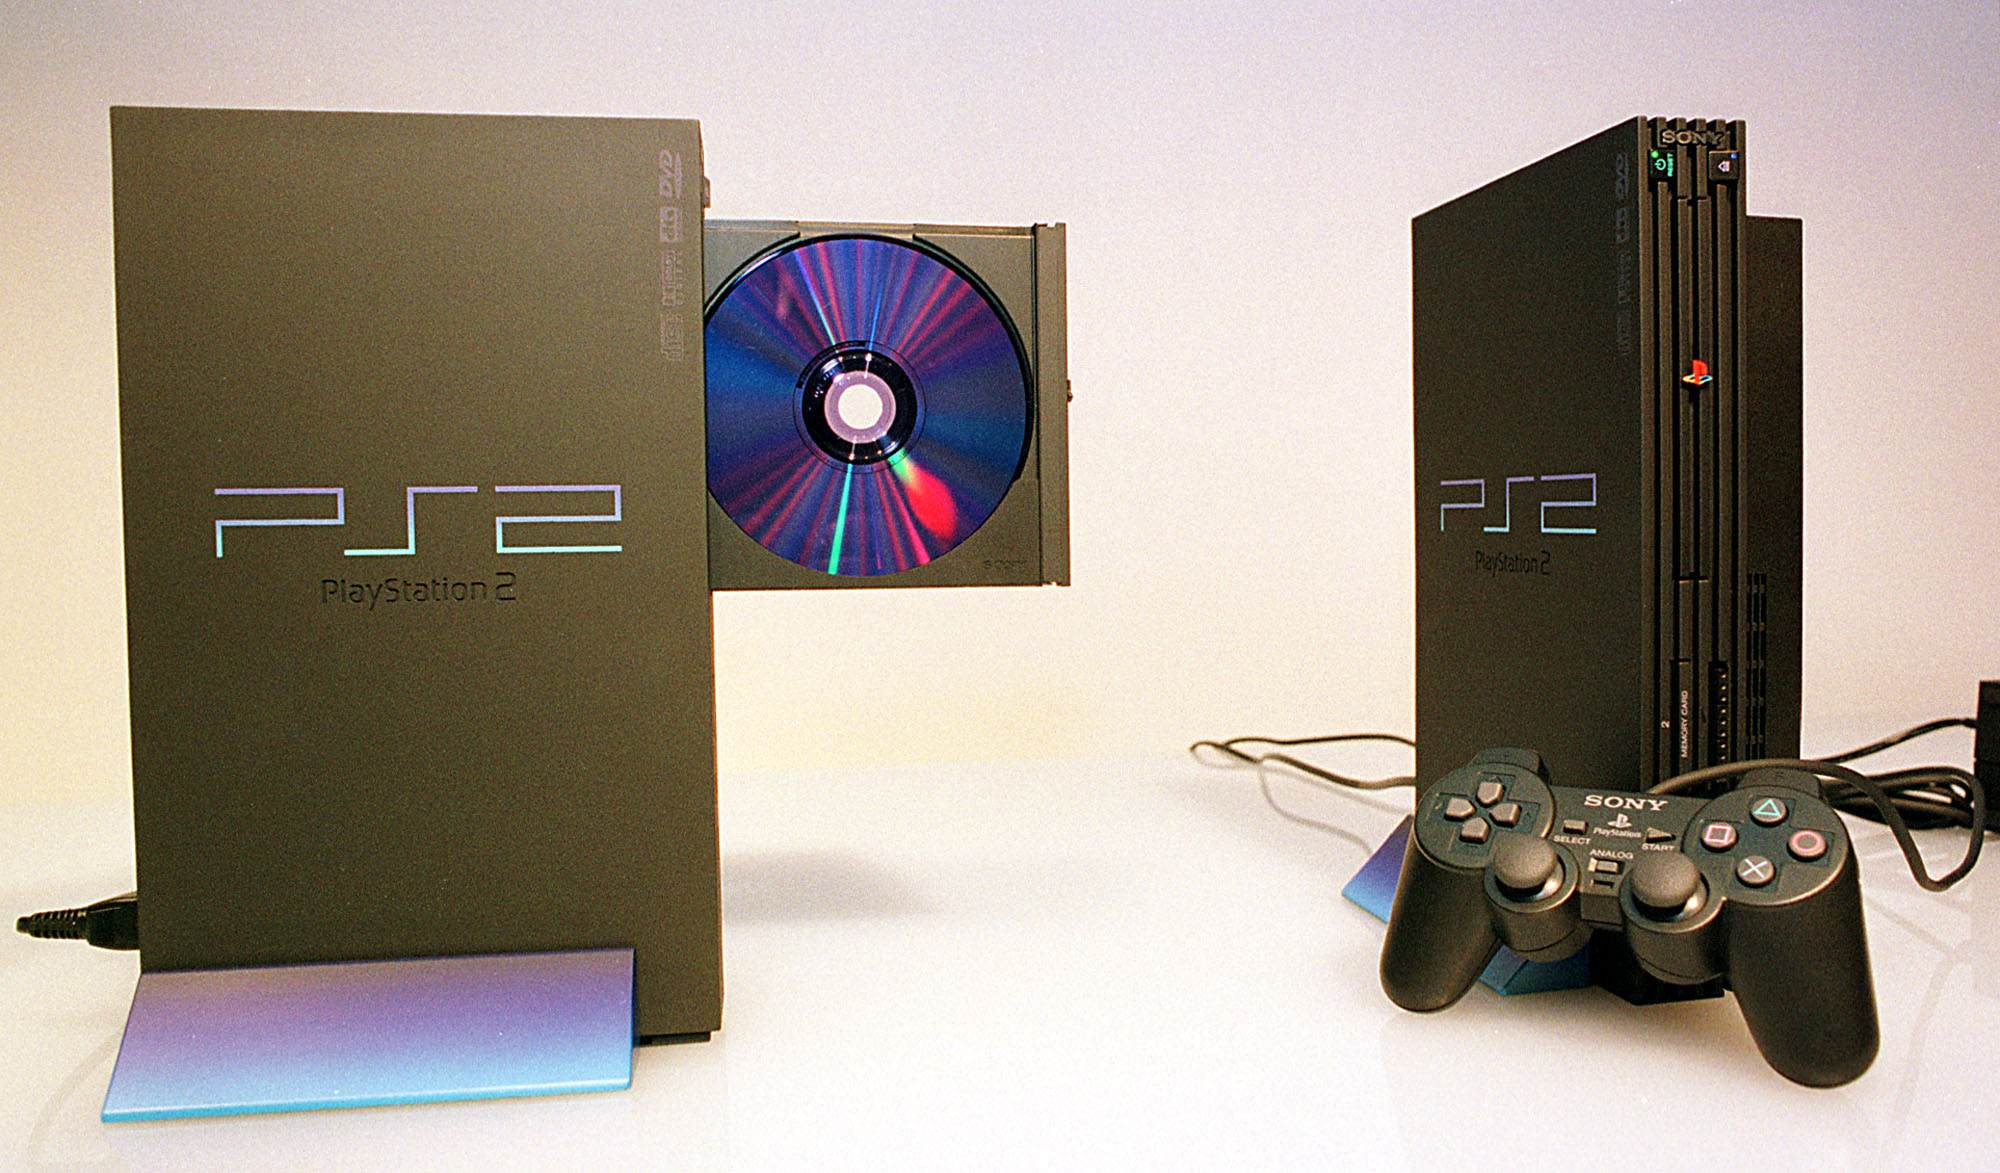 Playstation 2 lanserades år 2000. Det såldes 7 konsoler varje sekund de fyra första timmarna efter lansering.